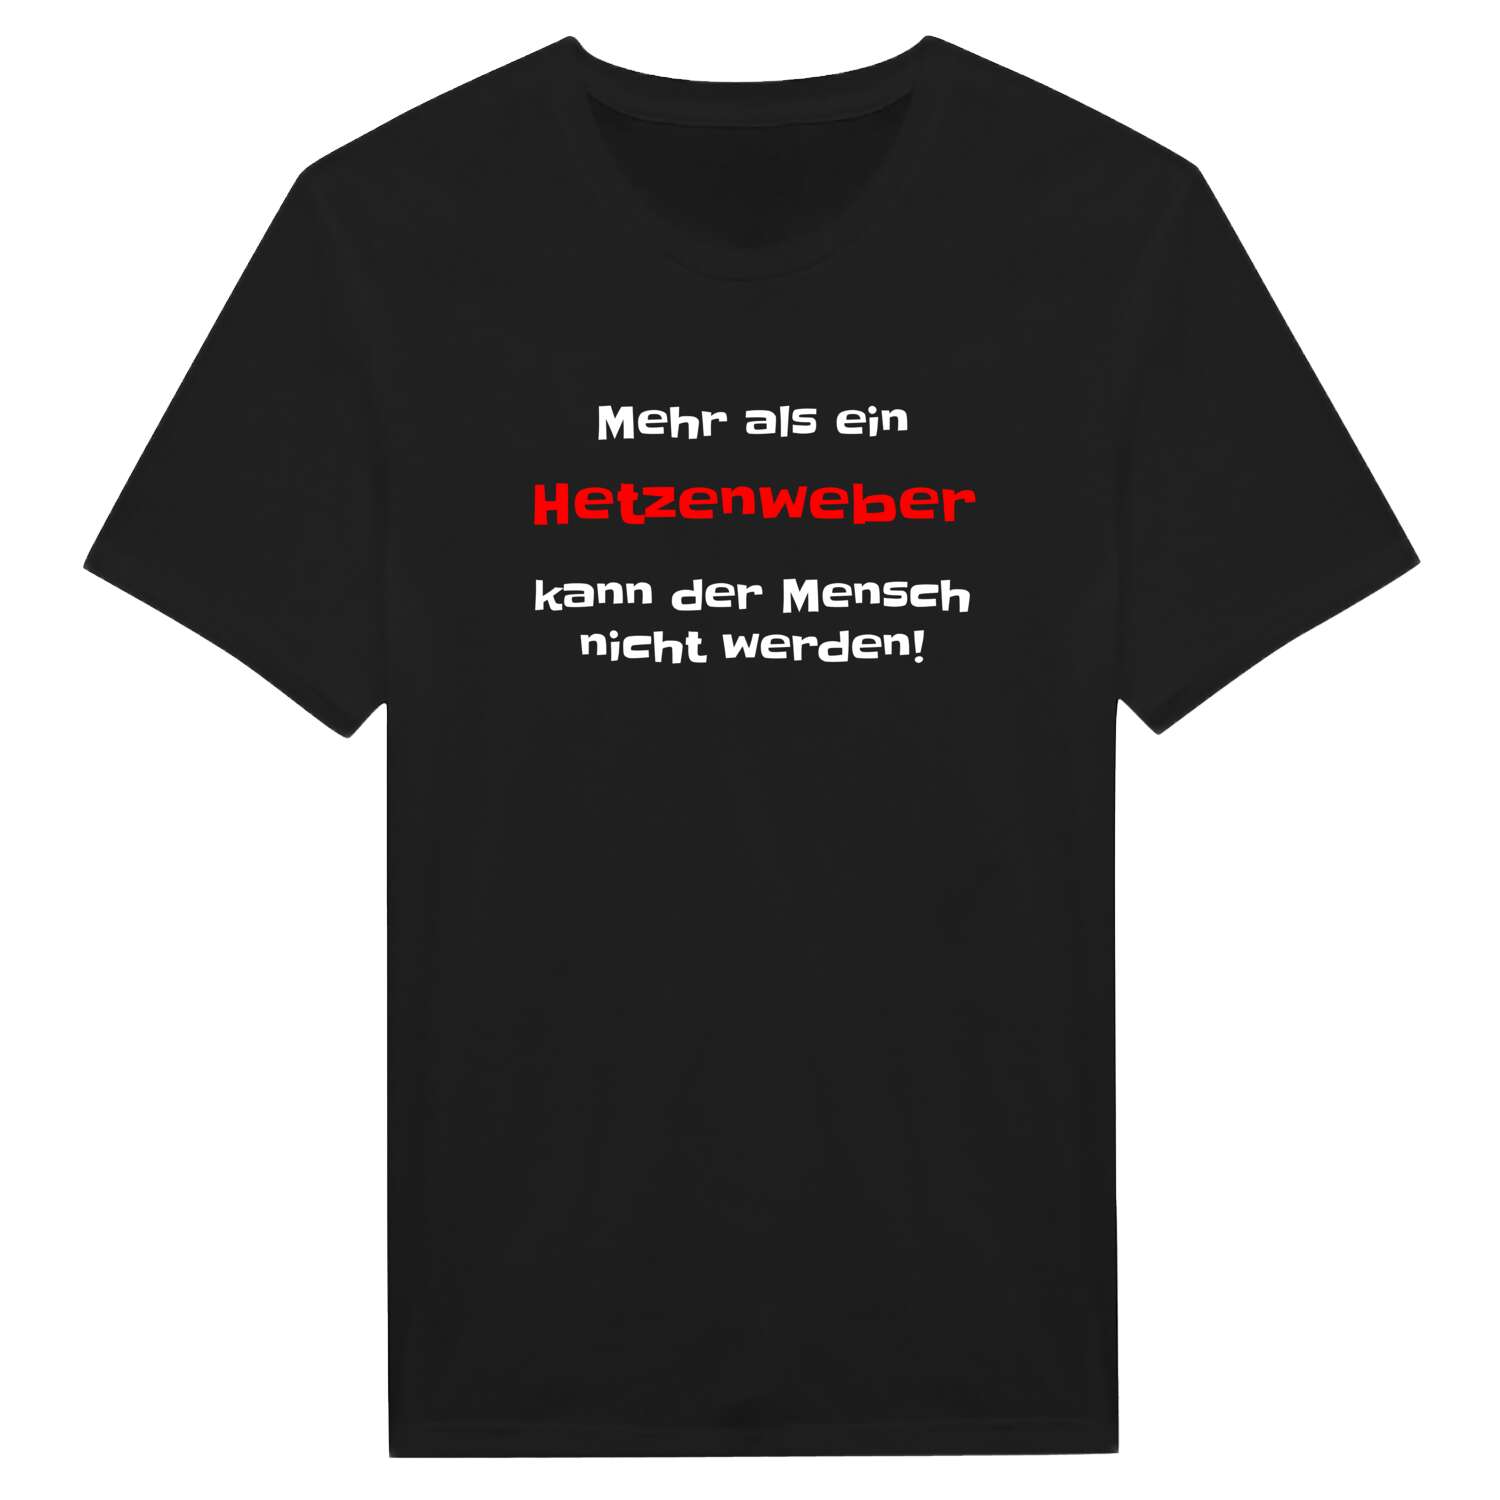 Hetzenweb T-Shirt »Mehr als ein«